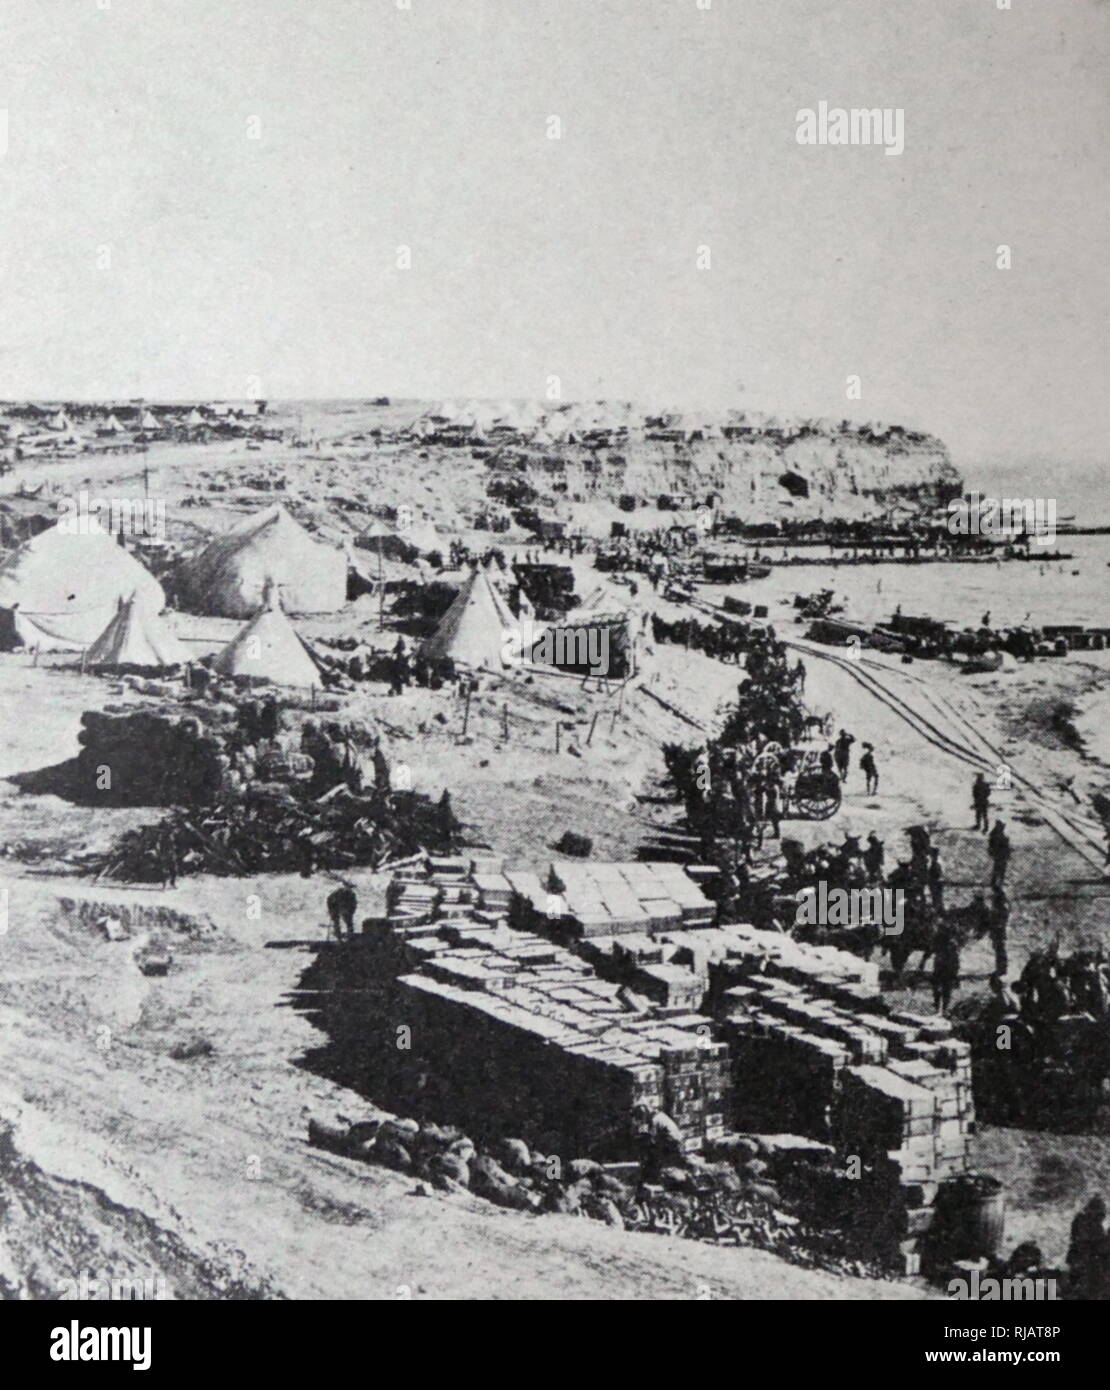 Die Landung am Kap Helles (Seddülbahir Çıkarması), war Teil des amphibischen Invasion der Halbinsel Gallipoli von britischen und französischen Streitkräfte am 25. April 1915 während des Ersten Weltkriegs Stockfoto